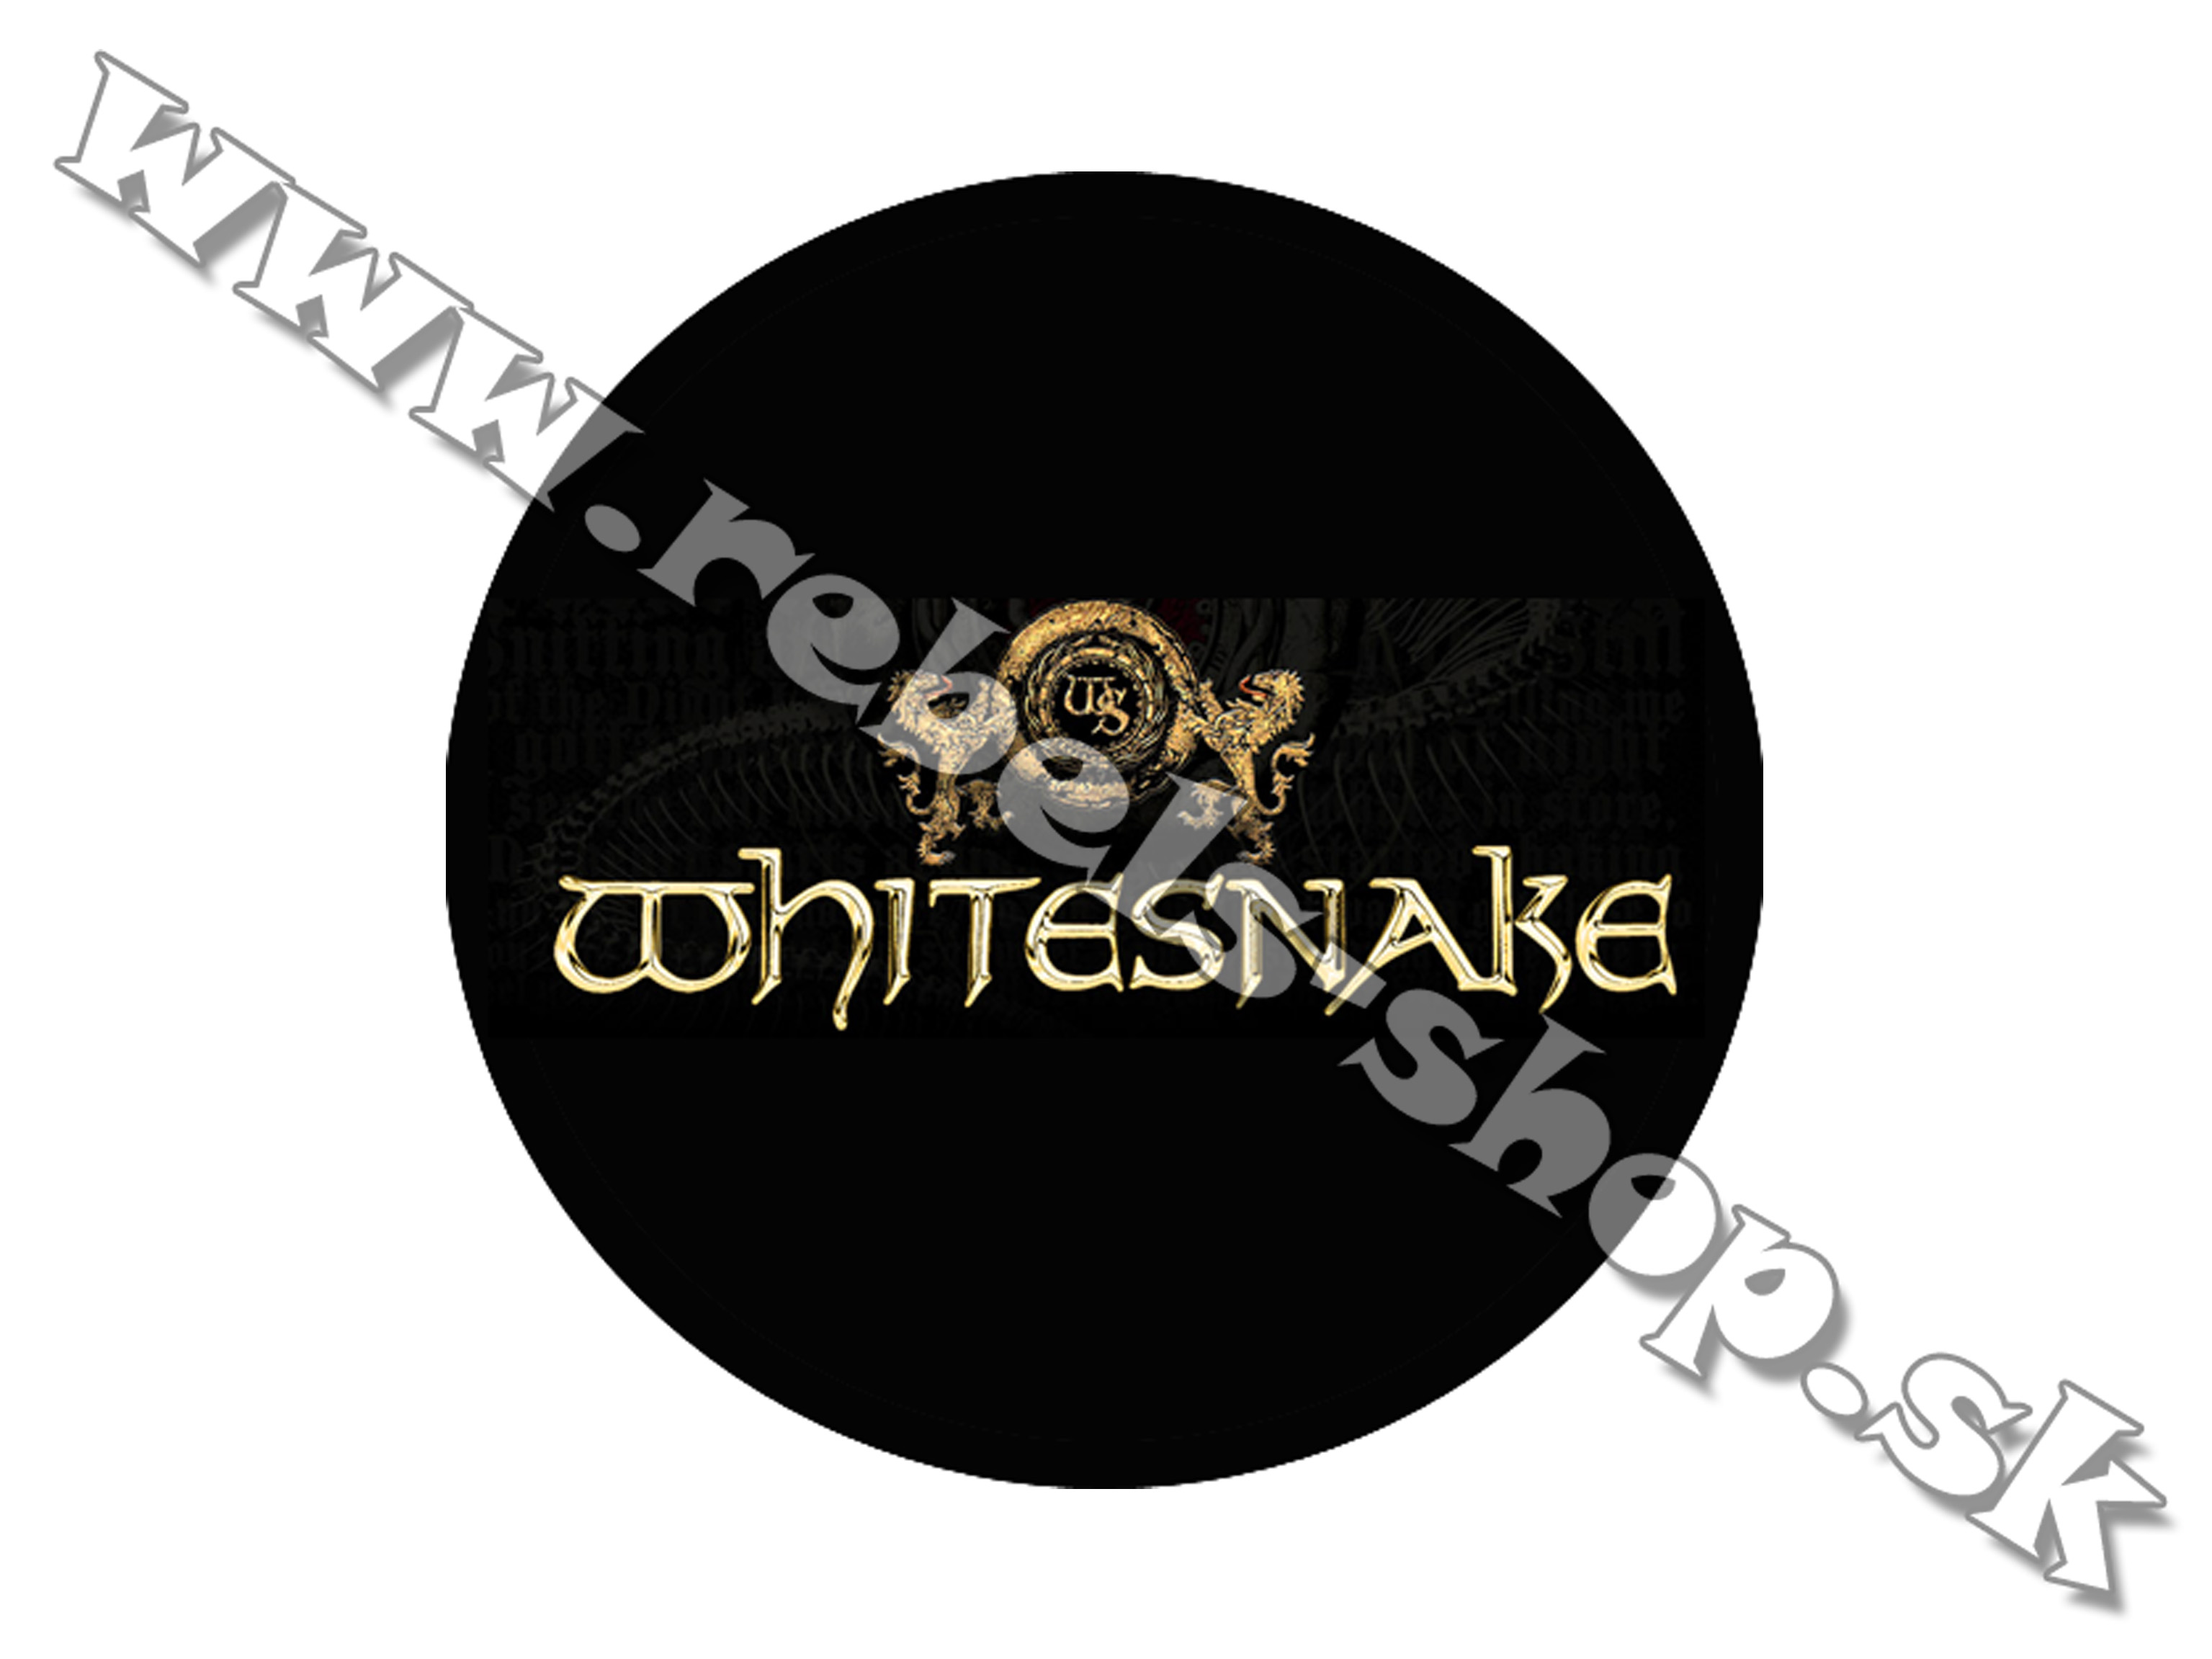 Odznak "Whitesnake"